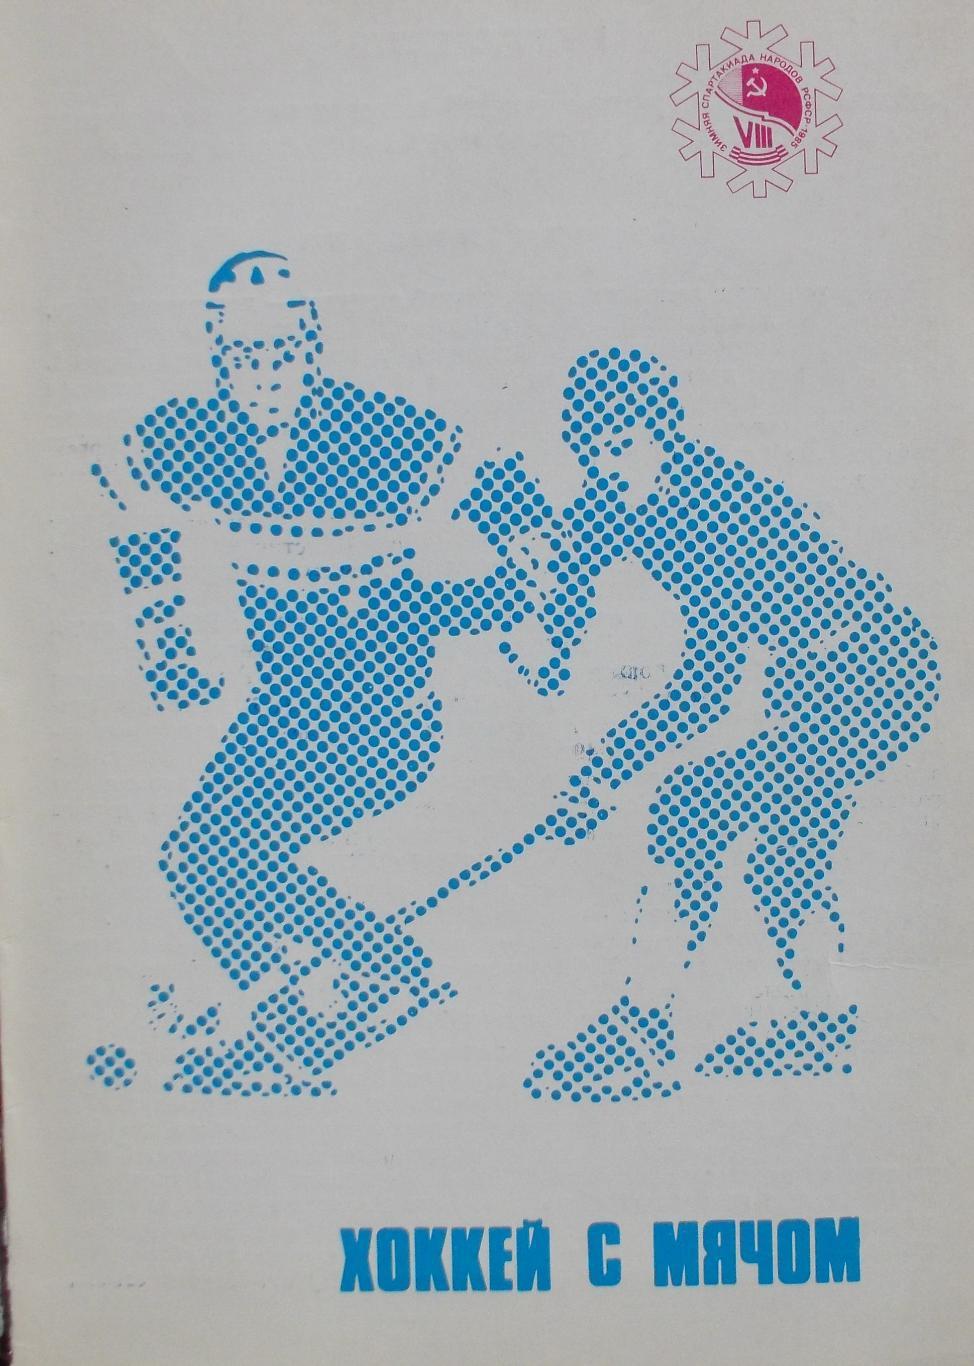 Хоккей с мячом. 8-я спартакиада народов РСФСР, Иваново, 1985 год.